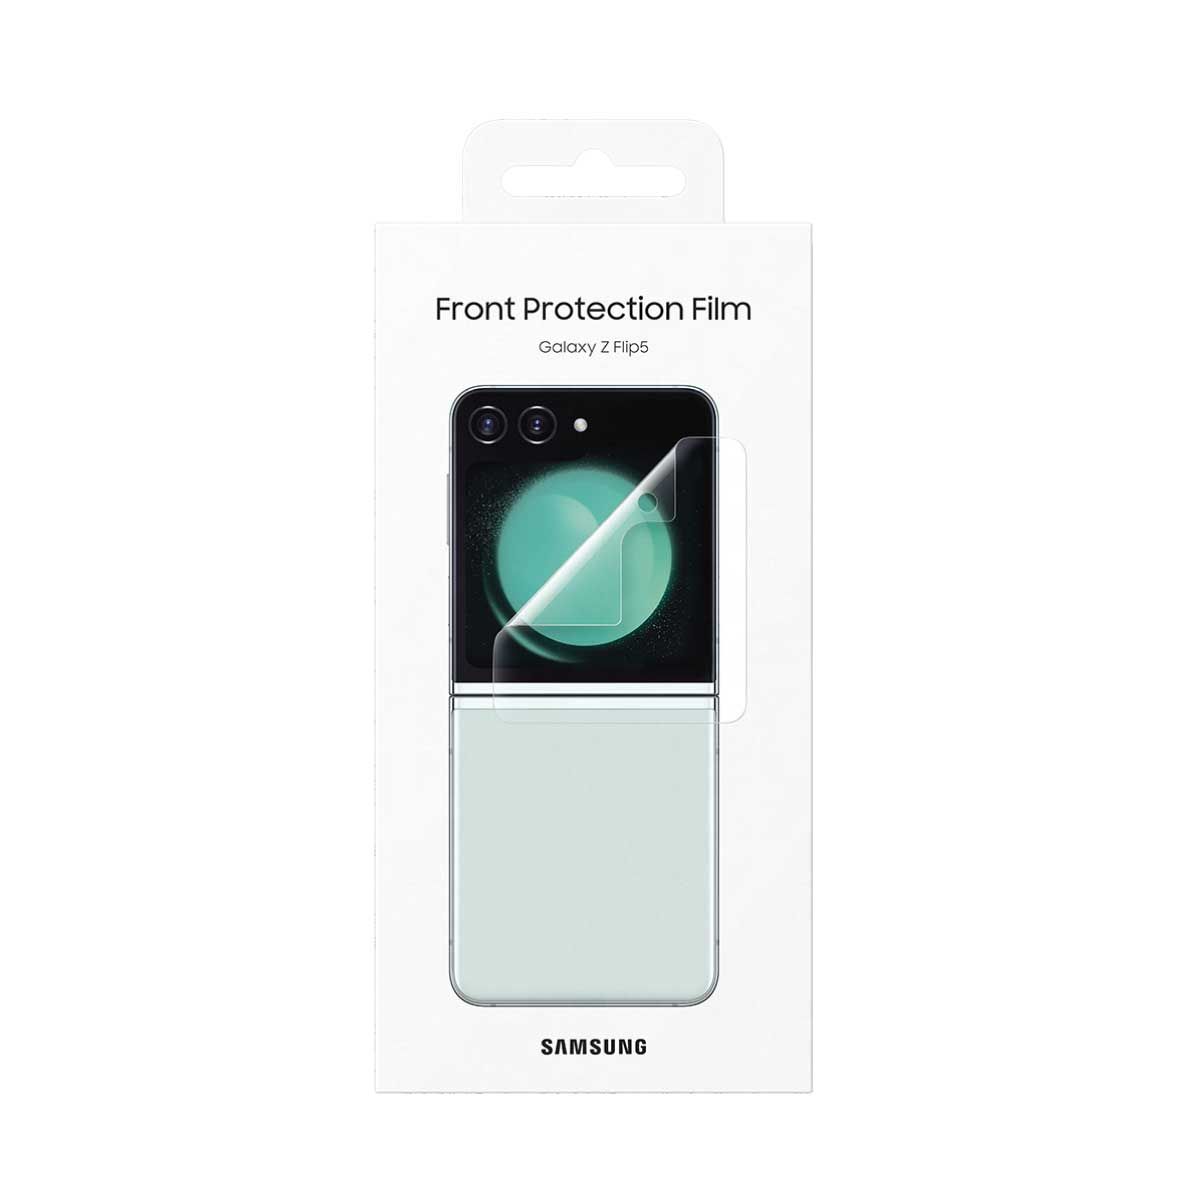 Z Flip5 Front Protection Film Transparent แบบใส